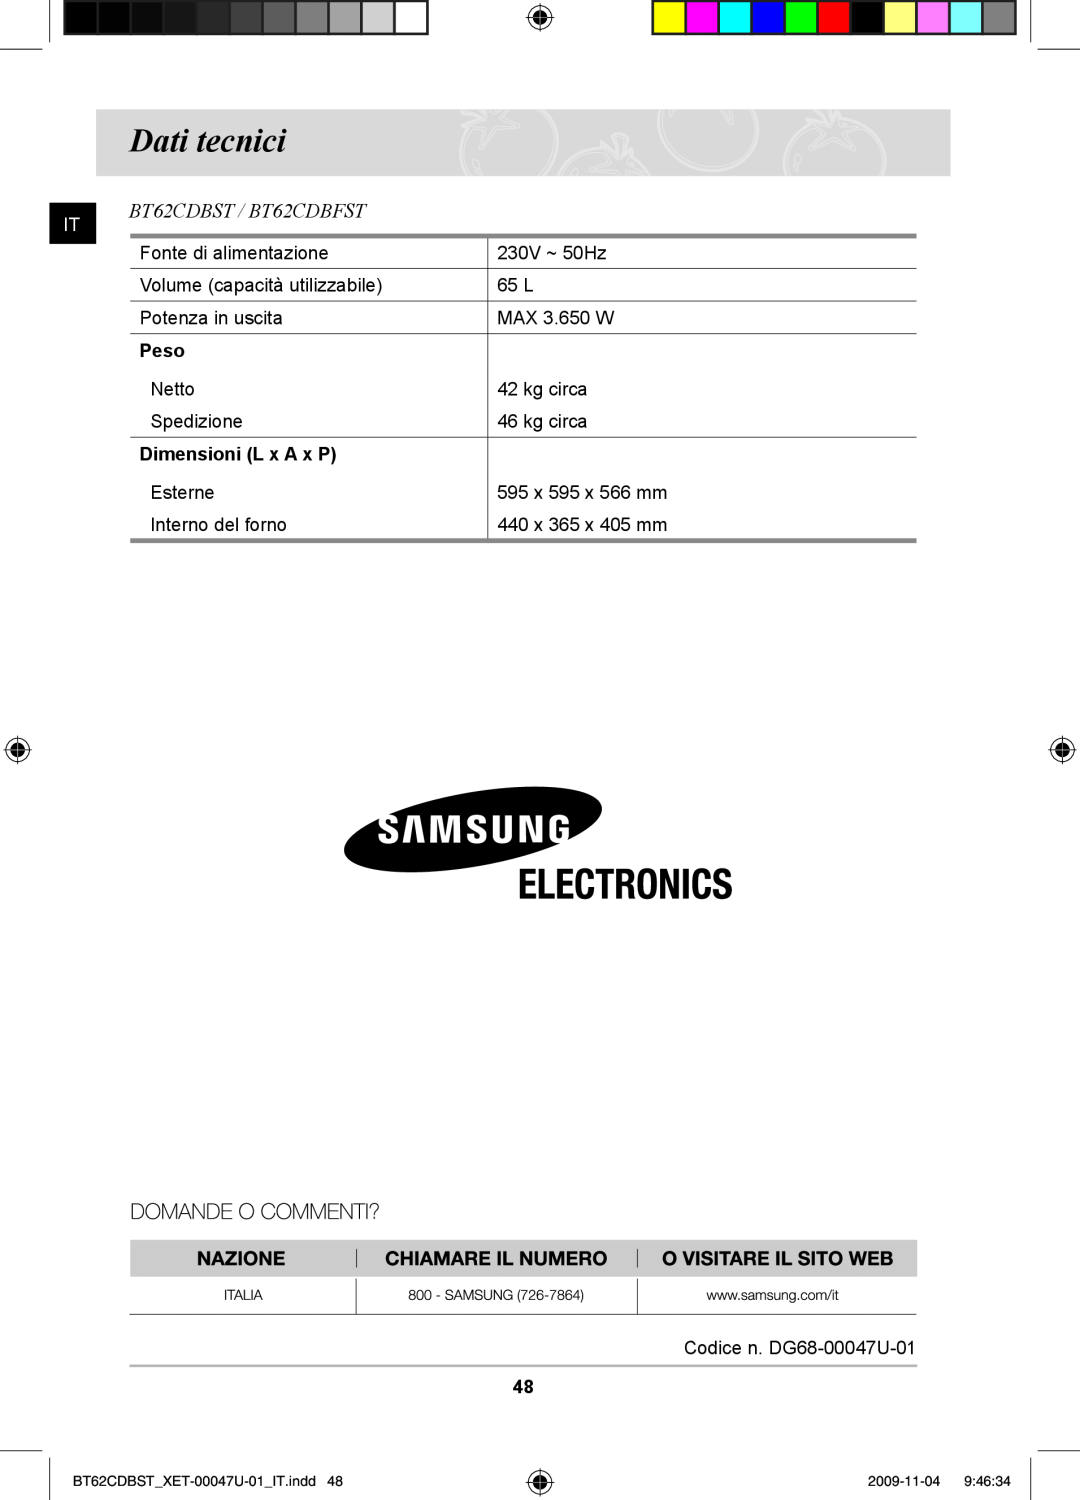 Samsung BT62CDBST/XET manual Dati tecnici, BT62CDBST / BT62CDBFST, Peso, Dimensioni L x A x P 